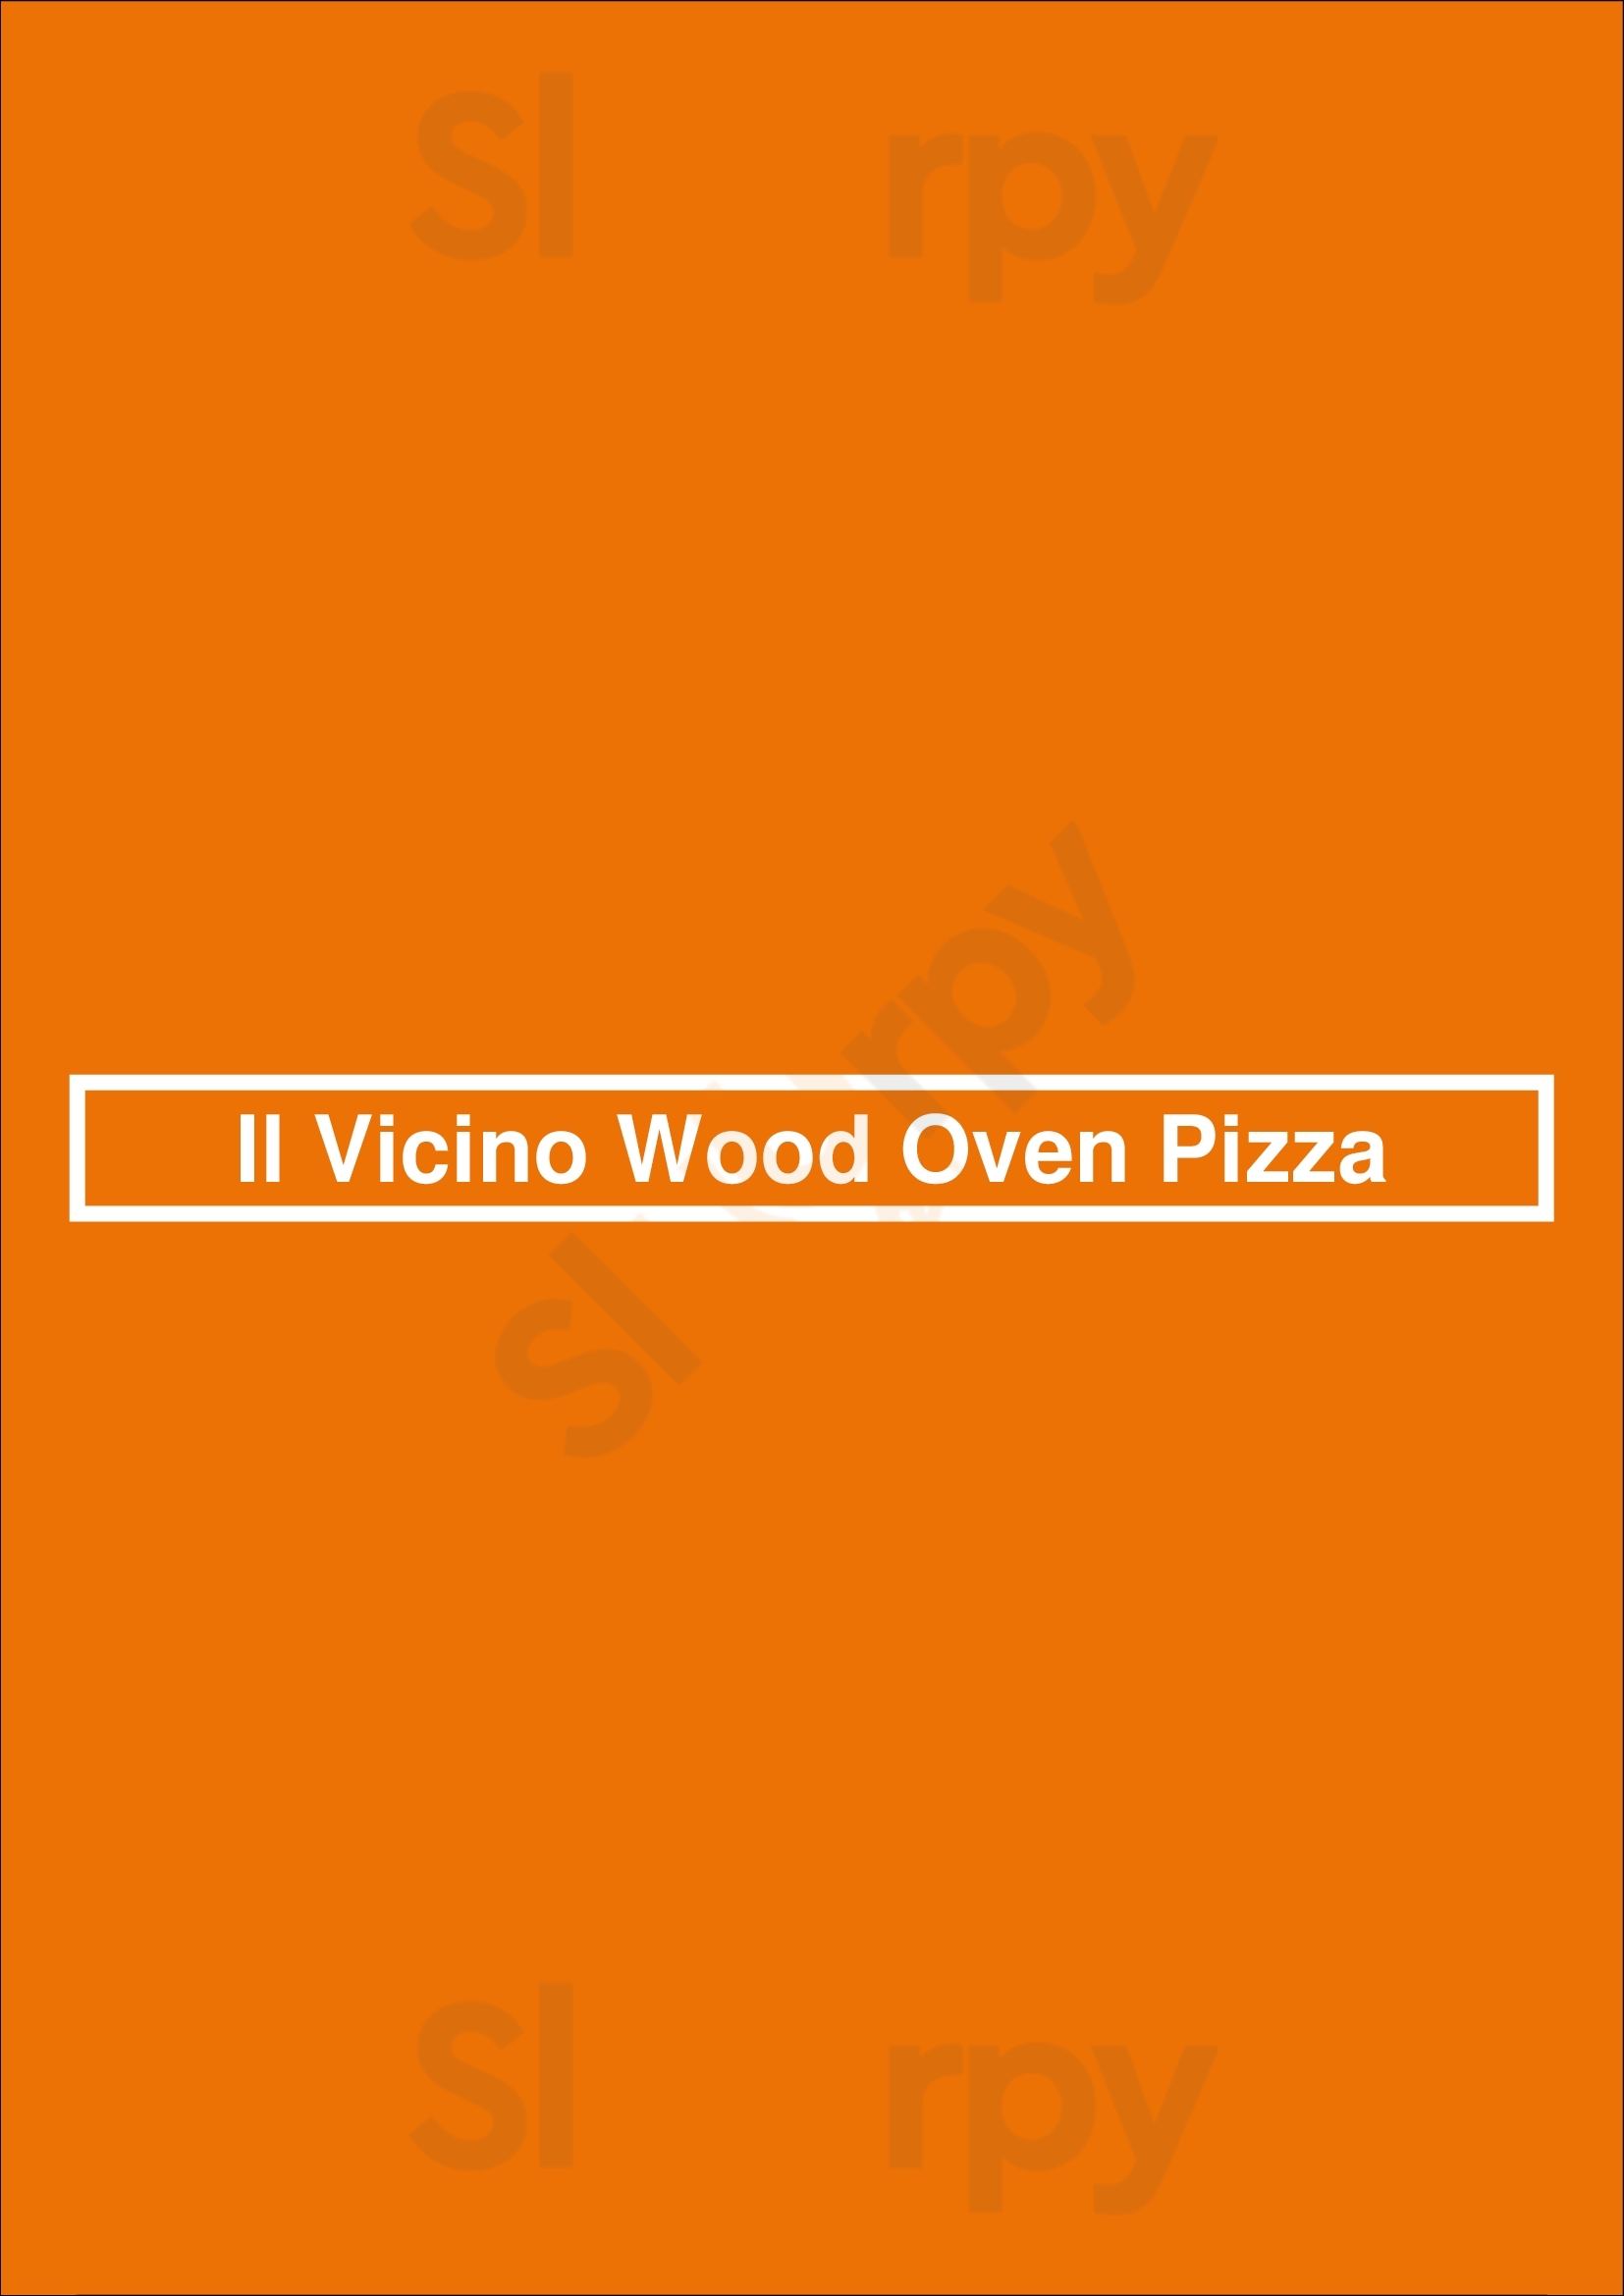 Il Vicino Wood Oven Pizza Wichita Menu - 1